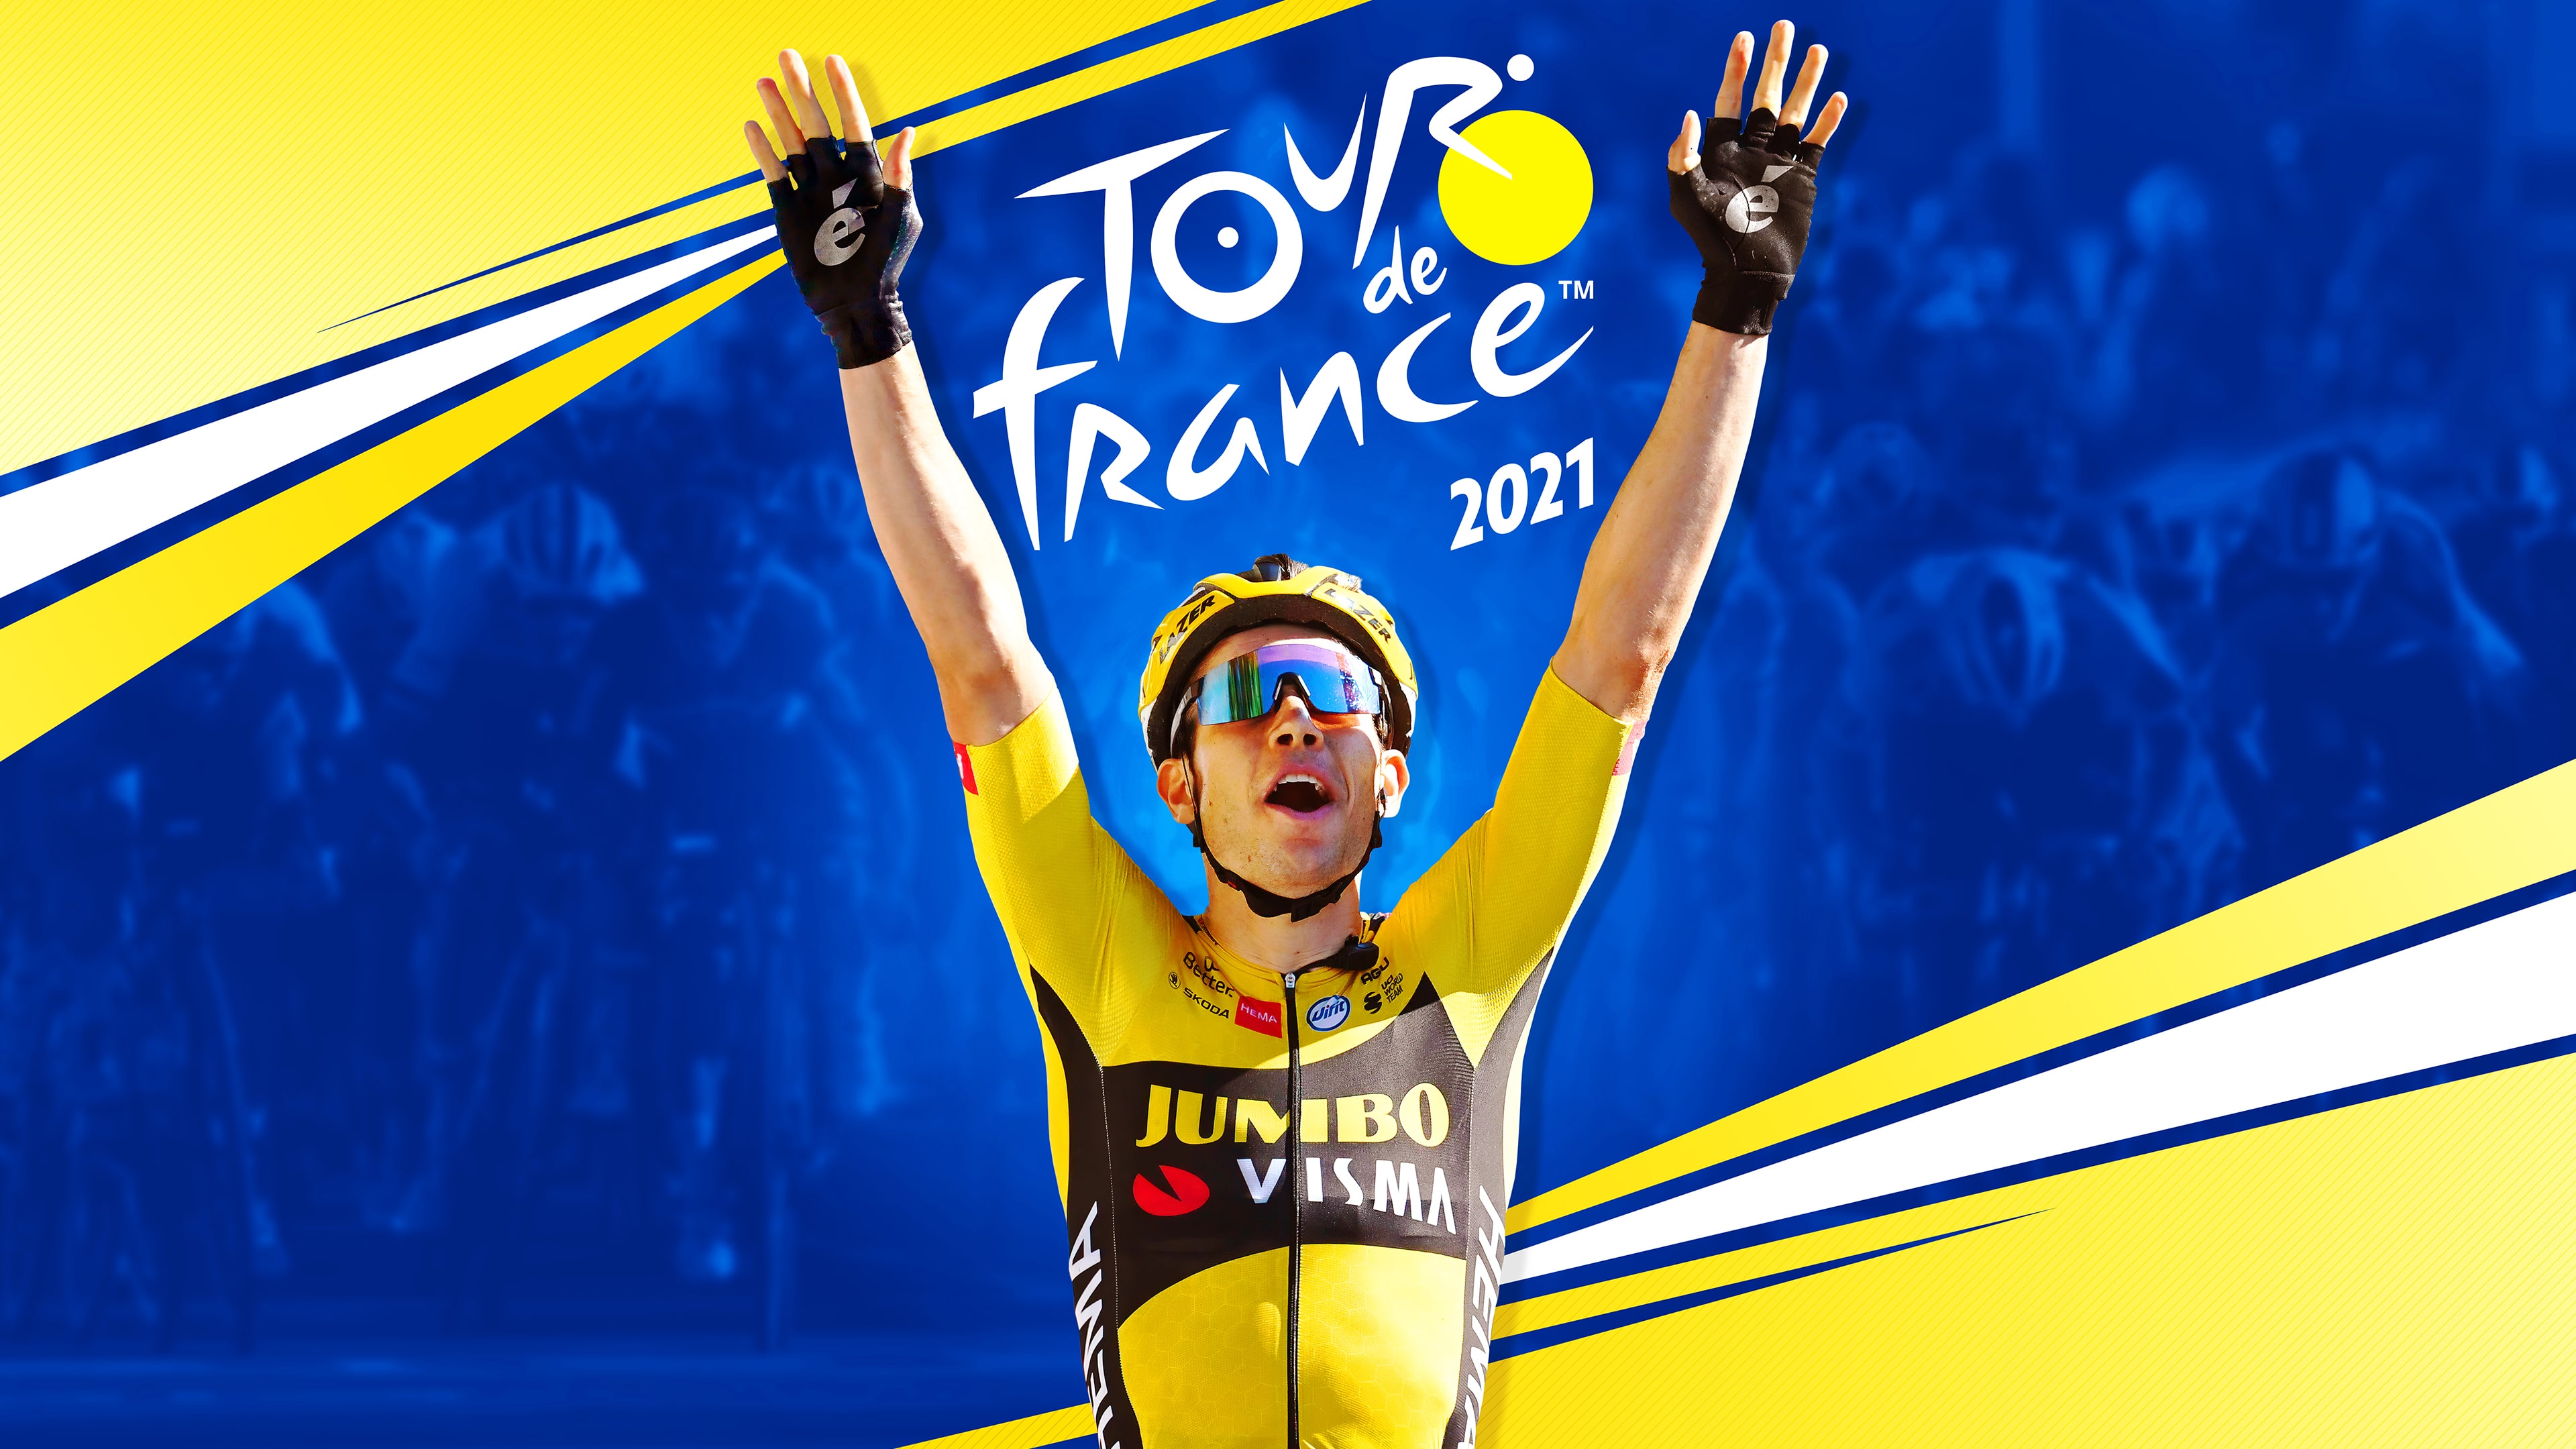 Tour de France 2021 PS5 (English)